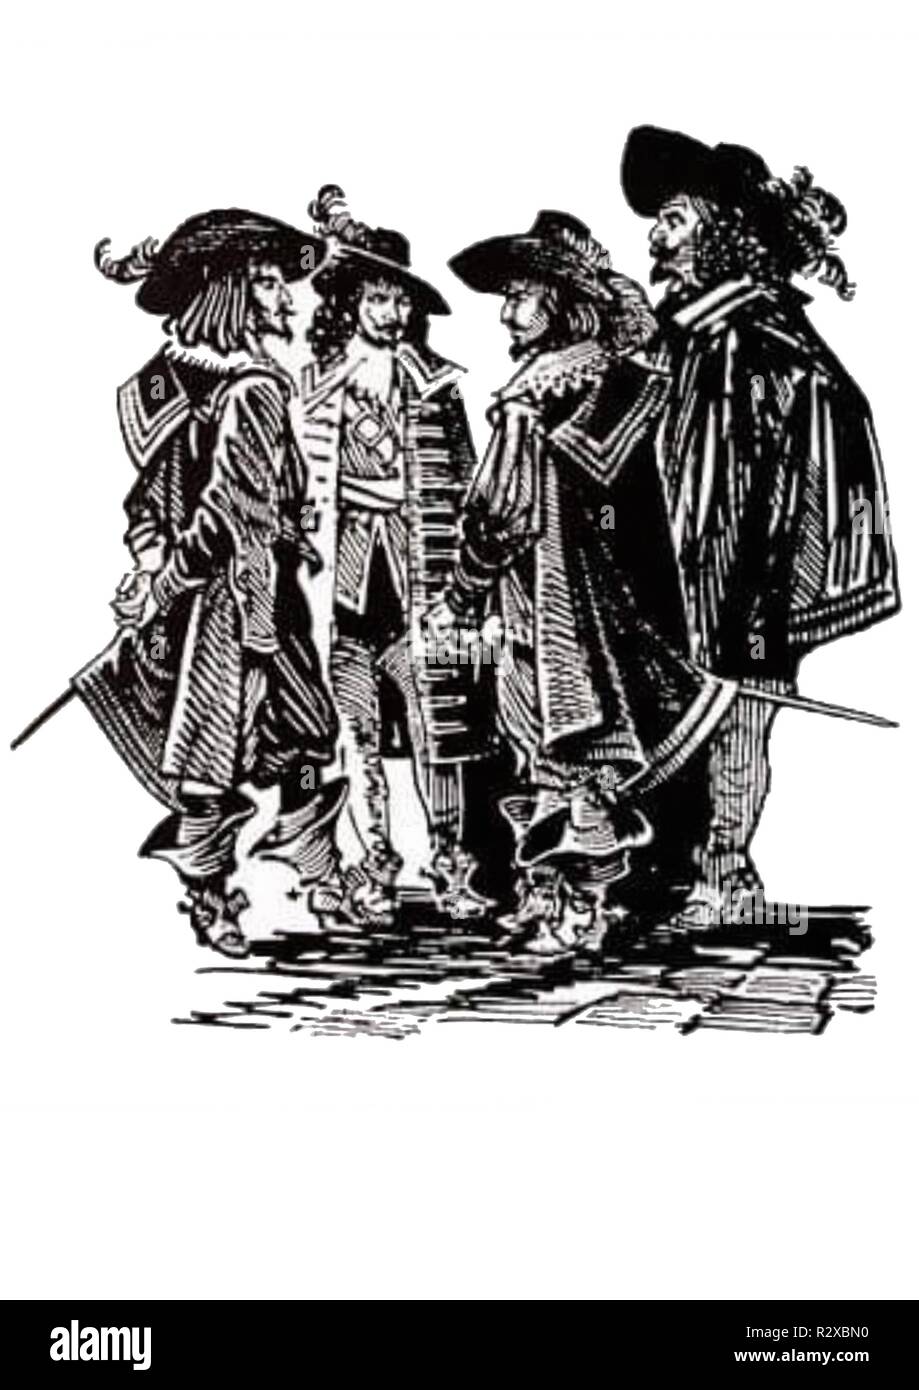 three musketeers vintage illustration Stock Photo